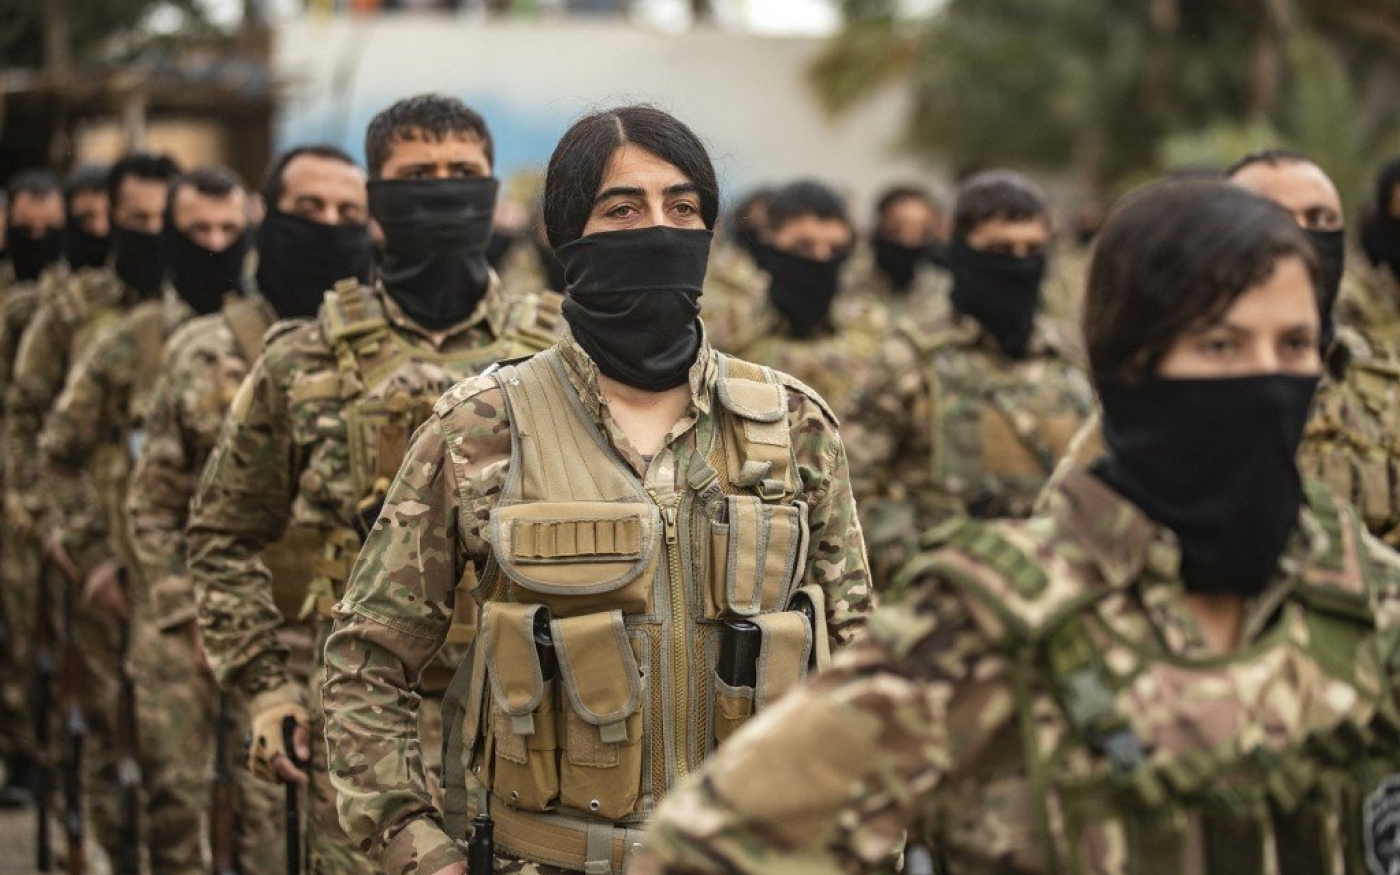 Des combattants des Forces démocratiques syriennes dans le gisement pétrolier d’al-Omar protégé par les États-Unis dans la province orientale de Deir ez-Zor, le 23 mars 2021 (AFP)